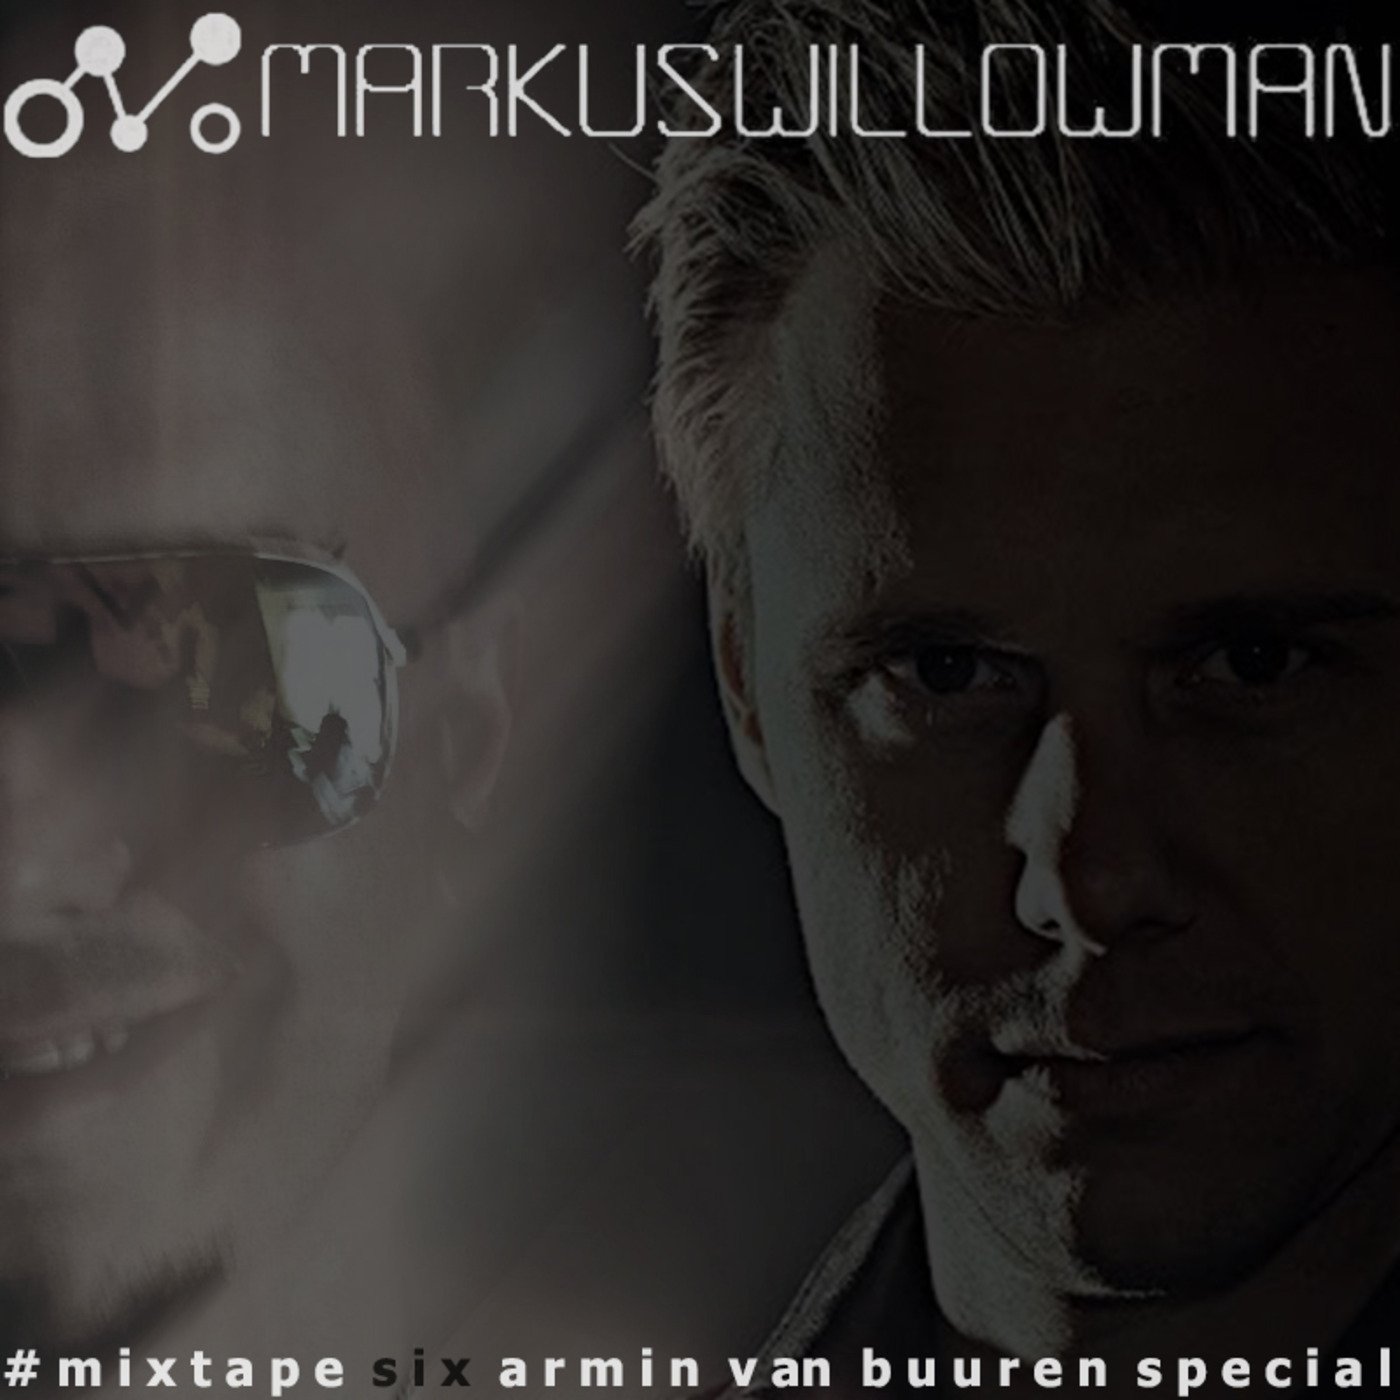 Mixtape6 by Markus Willowman (Armin Van Buuren Special)